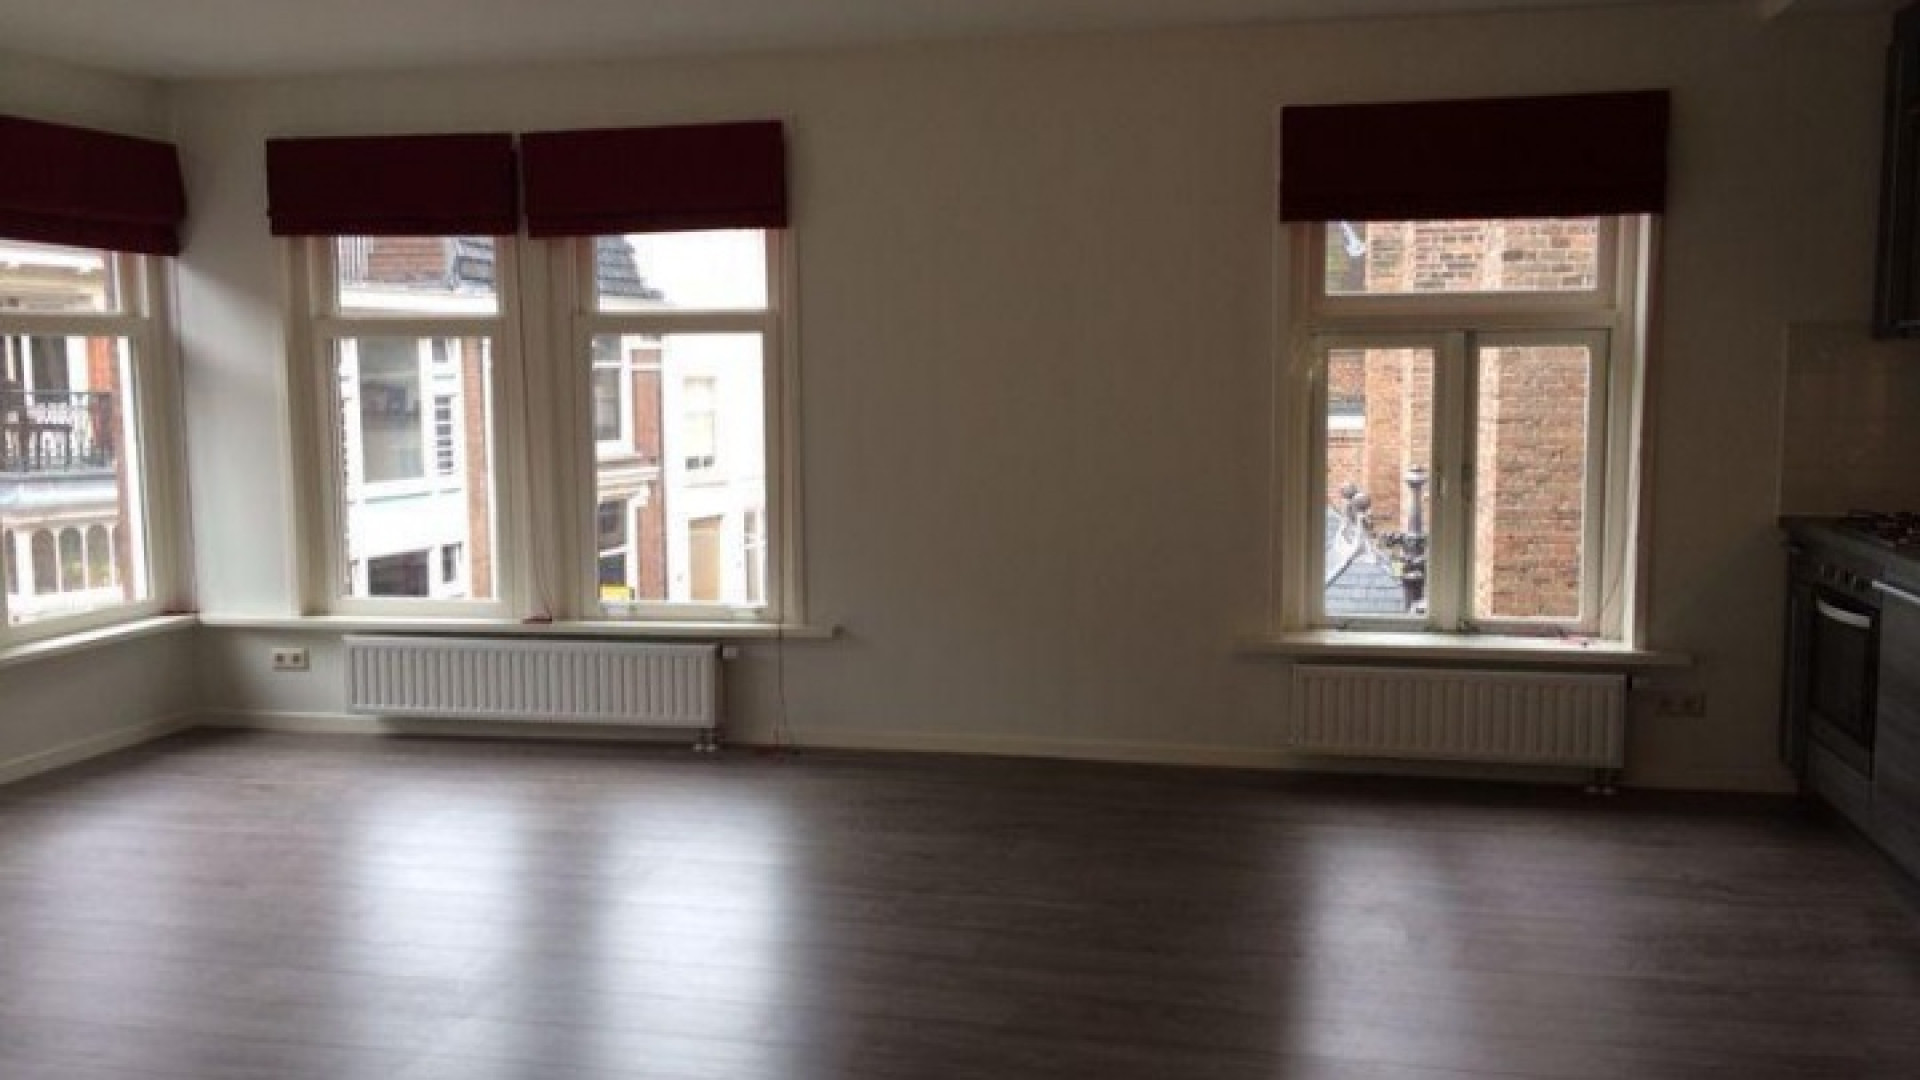 Zimra Geurts huurt appartement in centrum van Utrecht. Zie foto's 4